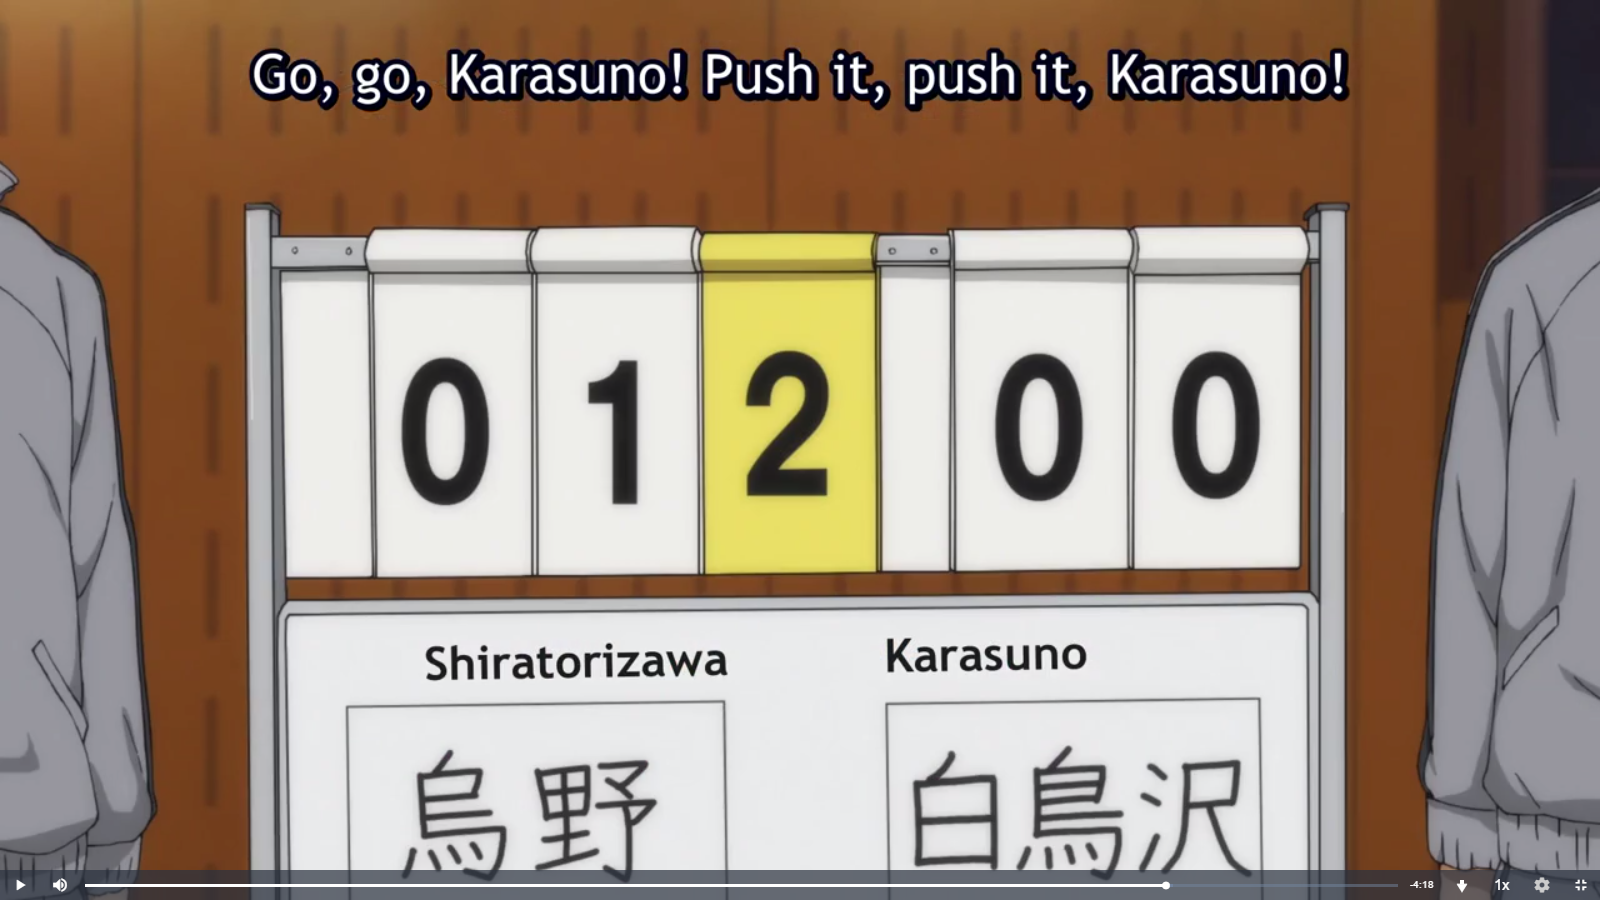 Spoilers] Haikyuu!!: Karasuno Koukou VS Shiratorizawa Gakuen Koukou -  Episode 7 discussion : r/anime